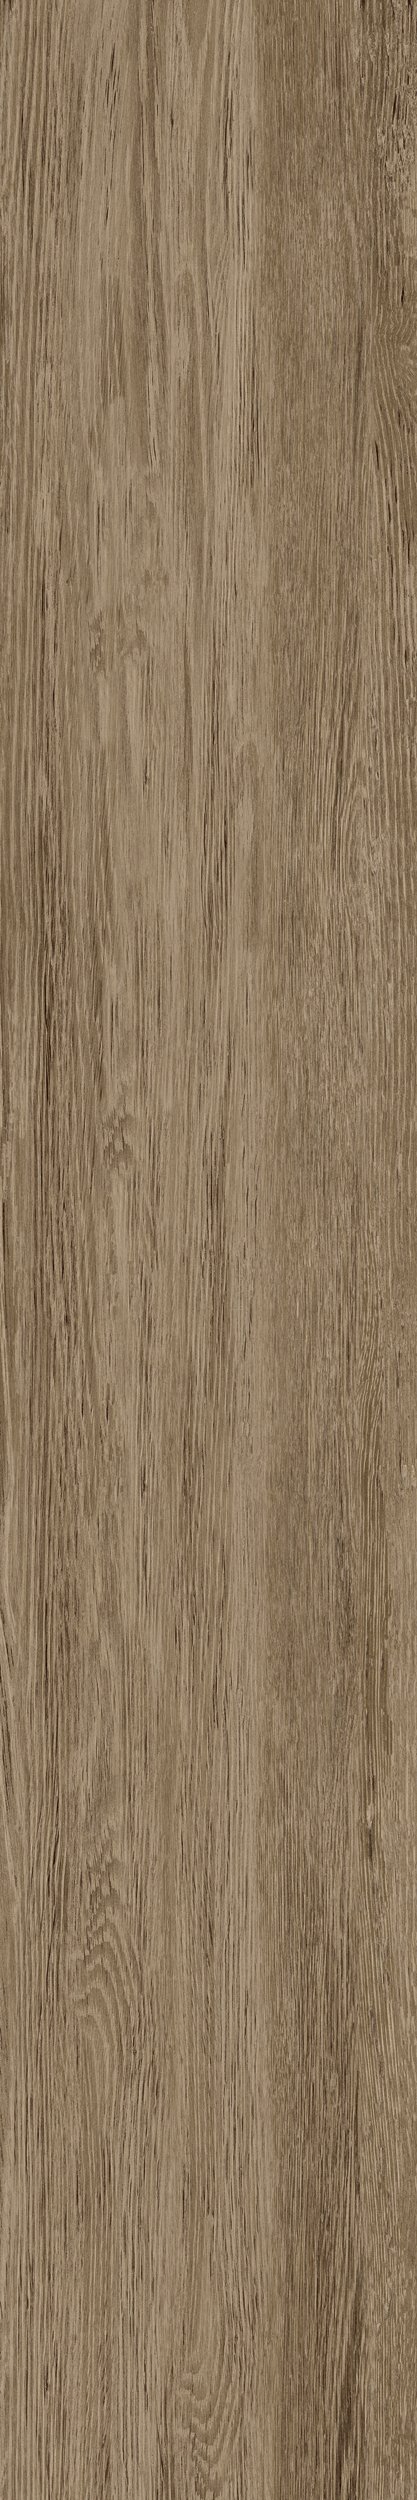 Fliese Eiche-Holzoptik braun 20x120 cm "Sunwood Walnut" rektifiziert